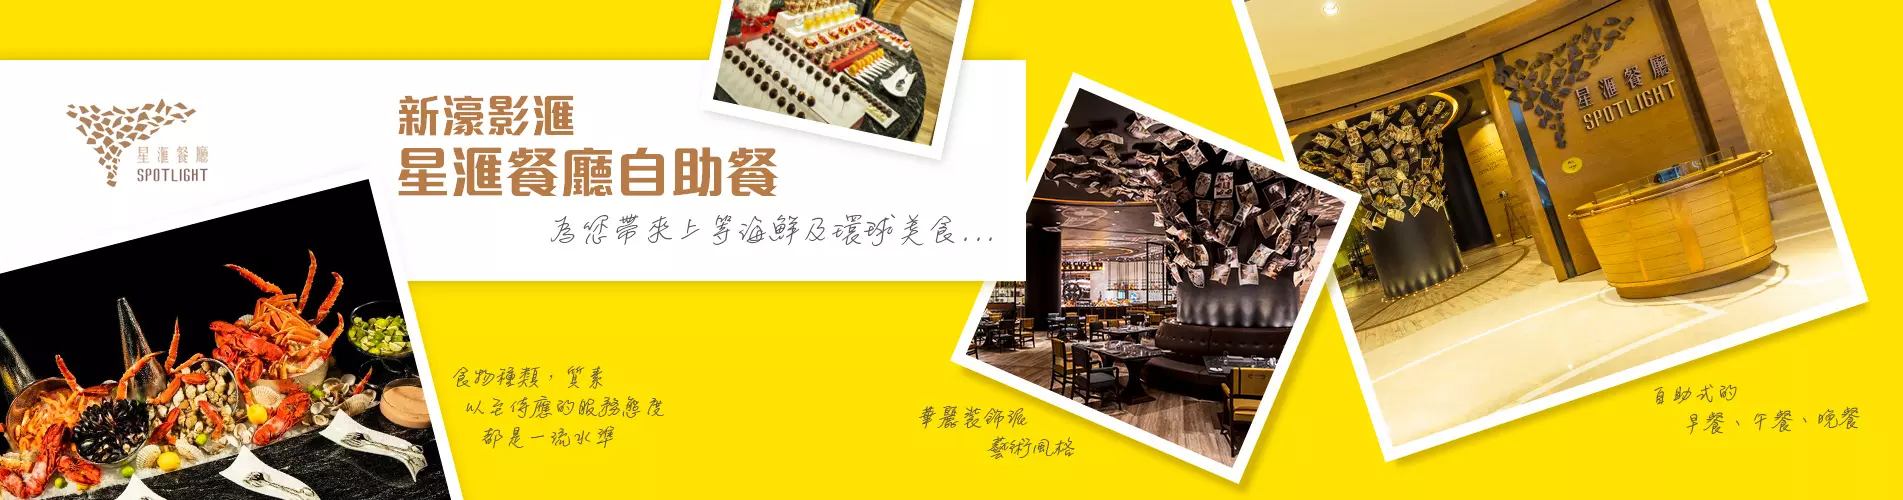 『幻彩耀濠江』‧ 新濠影滙星滙餐廳自助早餐 + 水上樂園